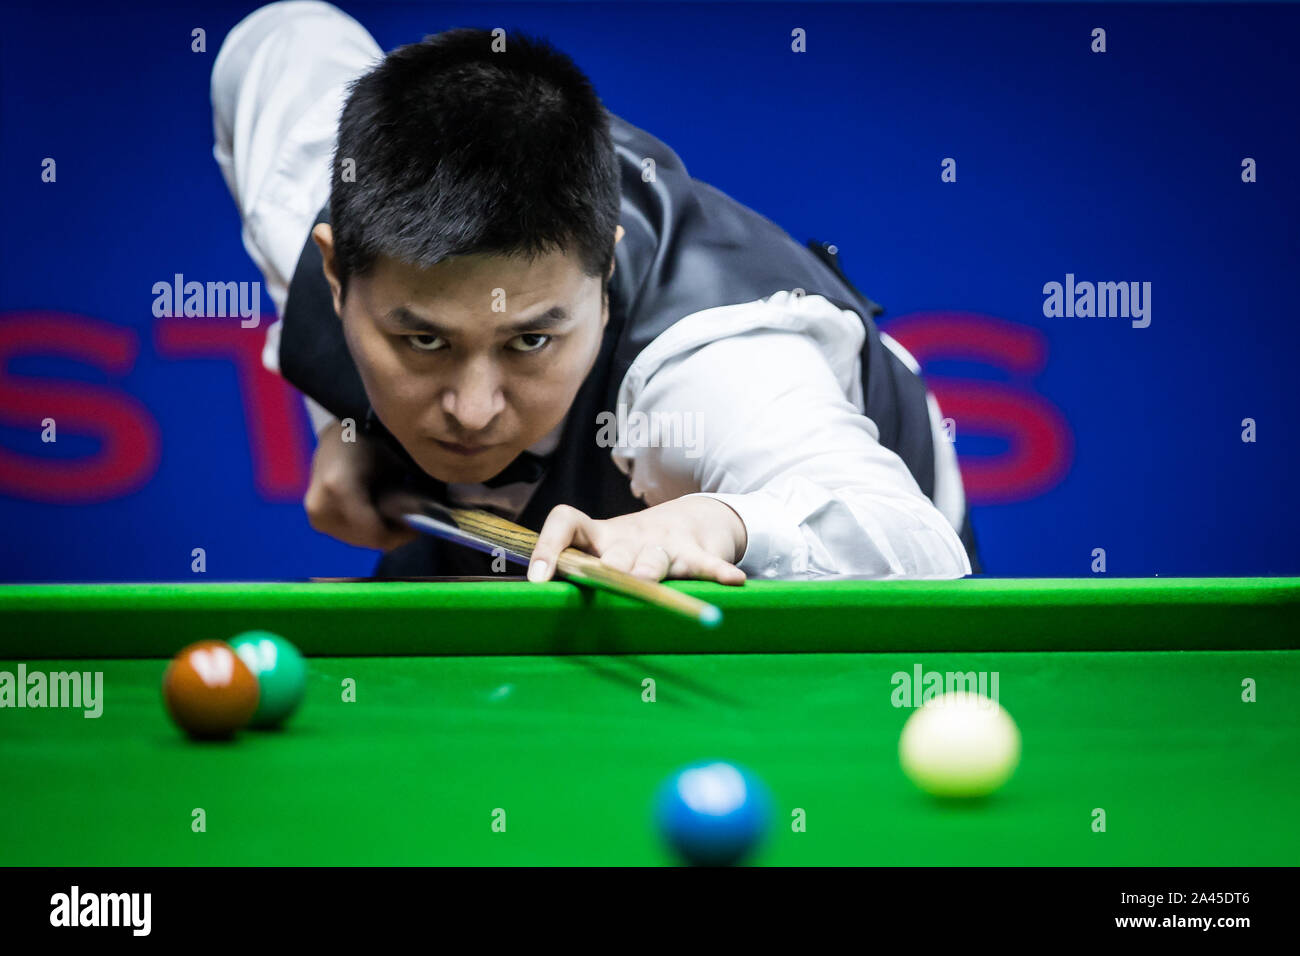 Chinesischer Snookerspieler Caojin spielt einen Schuß an der ersten Runde der 2019 Snooker Shanghai Masters in Schanghai, China, 10. September 2019. David Gilbert de Stockfoto